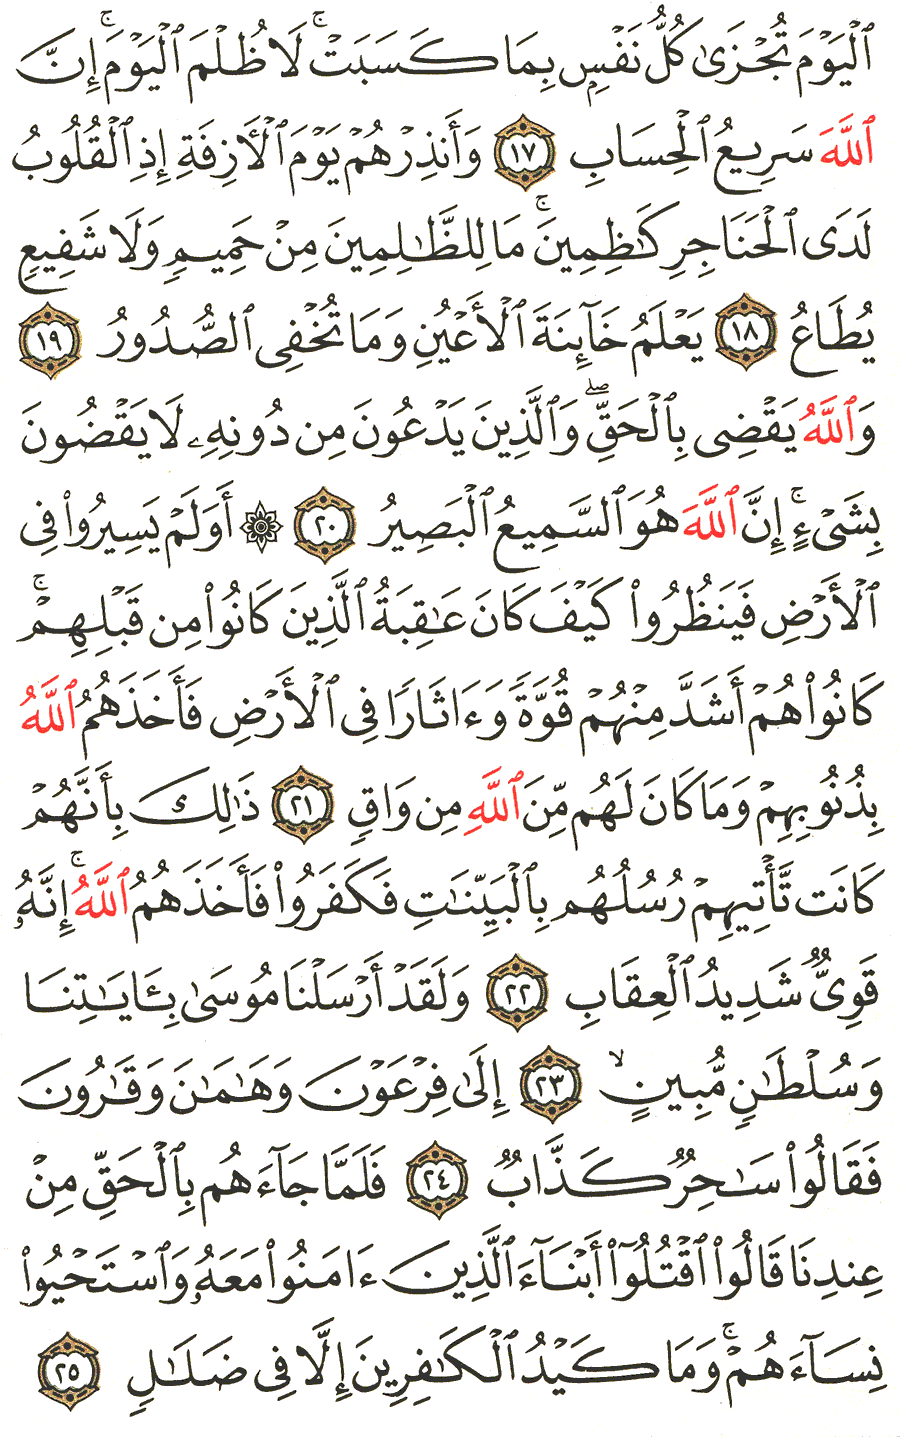 الصفحة 469 من القرآن الكريم